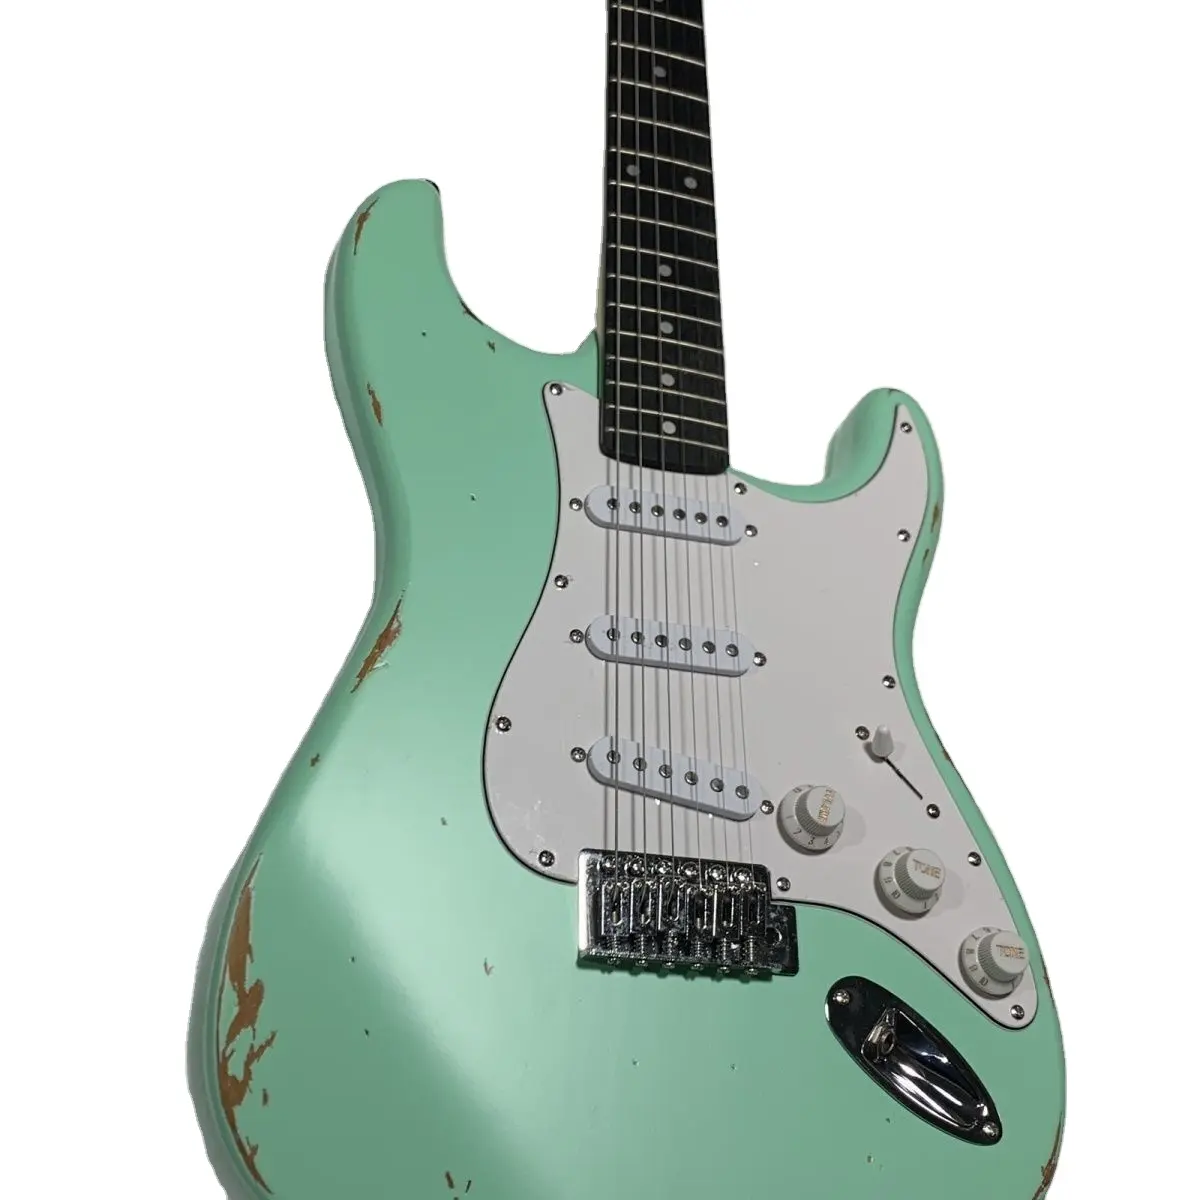 Nhà Máy bán hàng trực tiếp của chất lượng cao chuyên nghiệp tuổi Guitar điện màu xanh lá cây